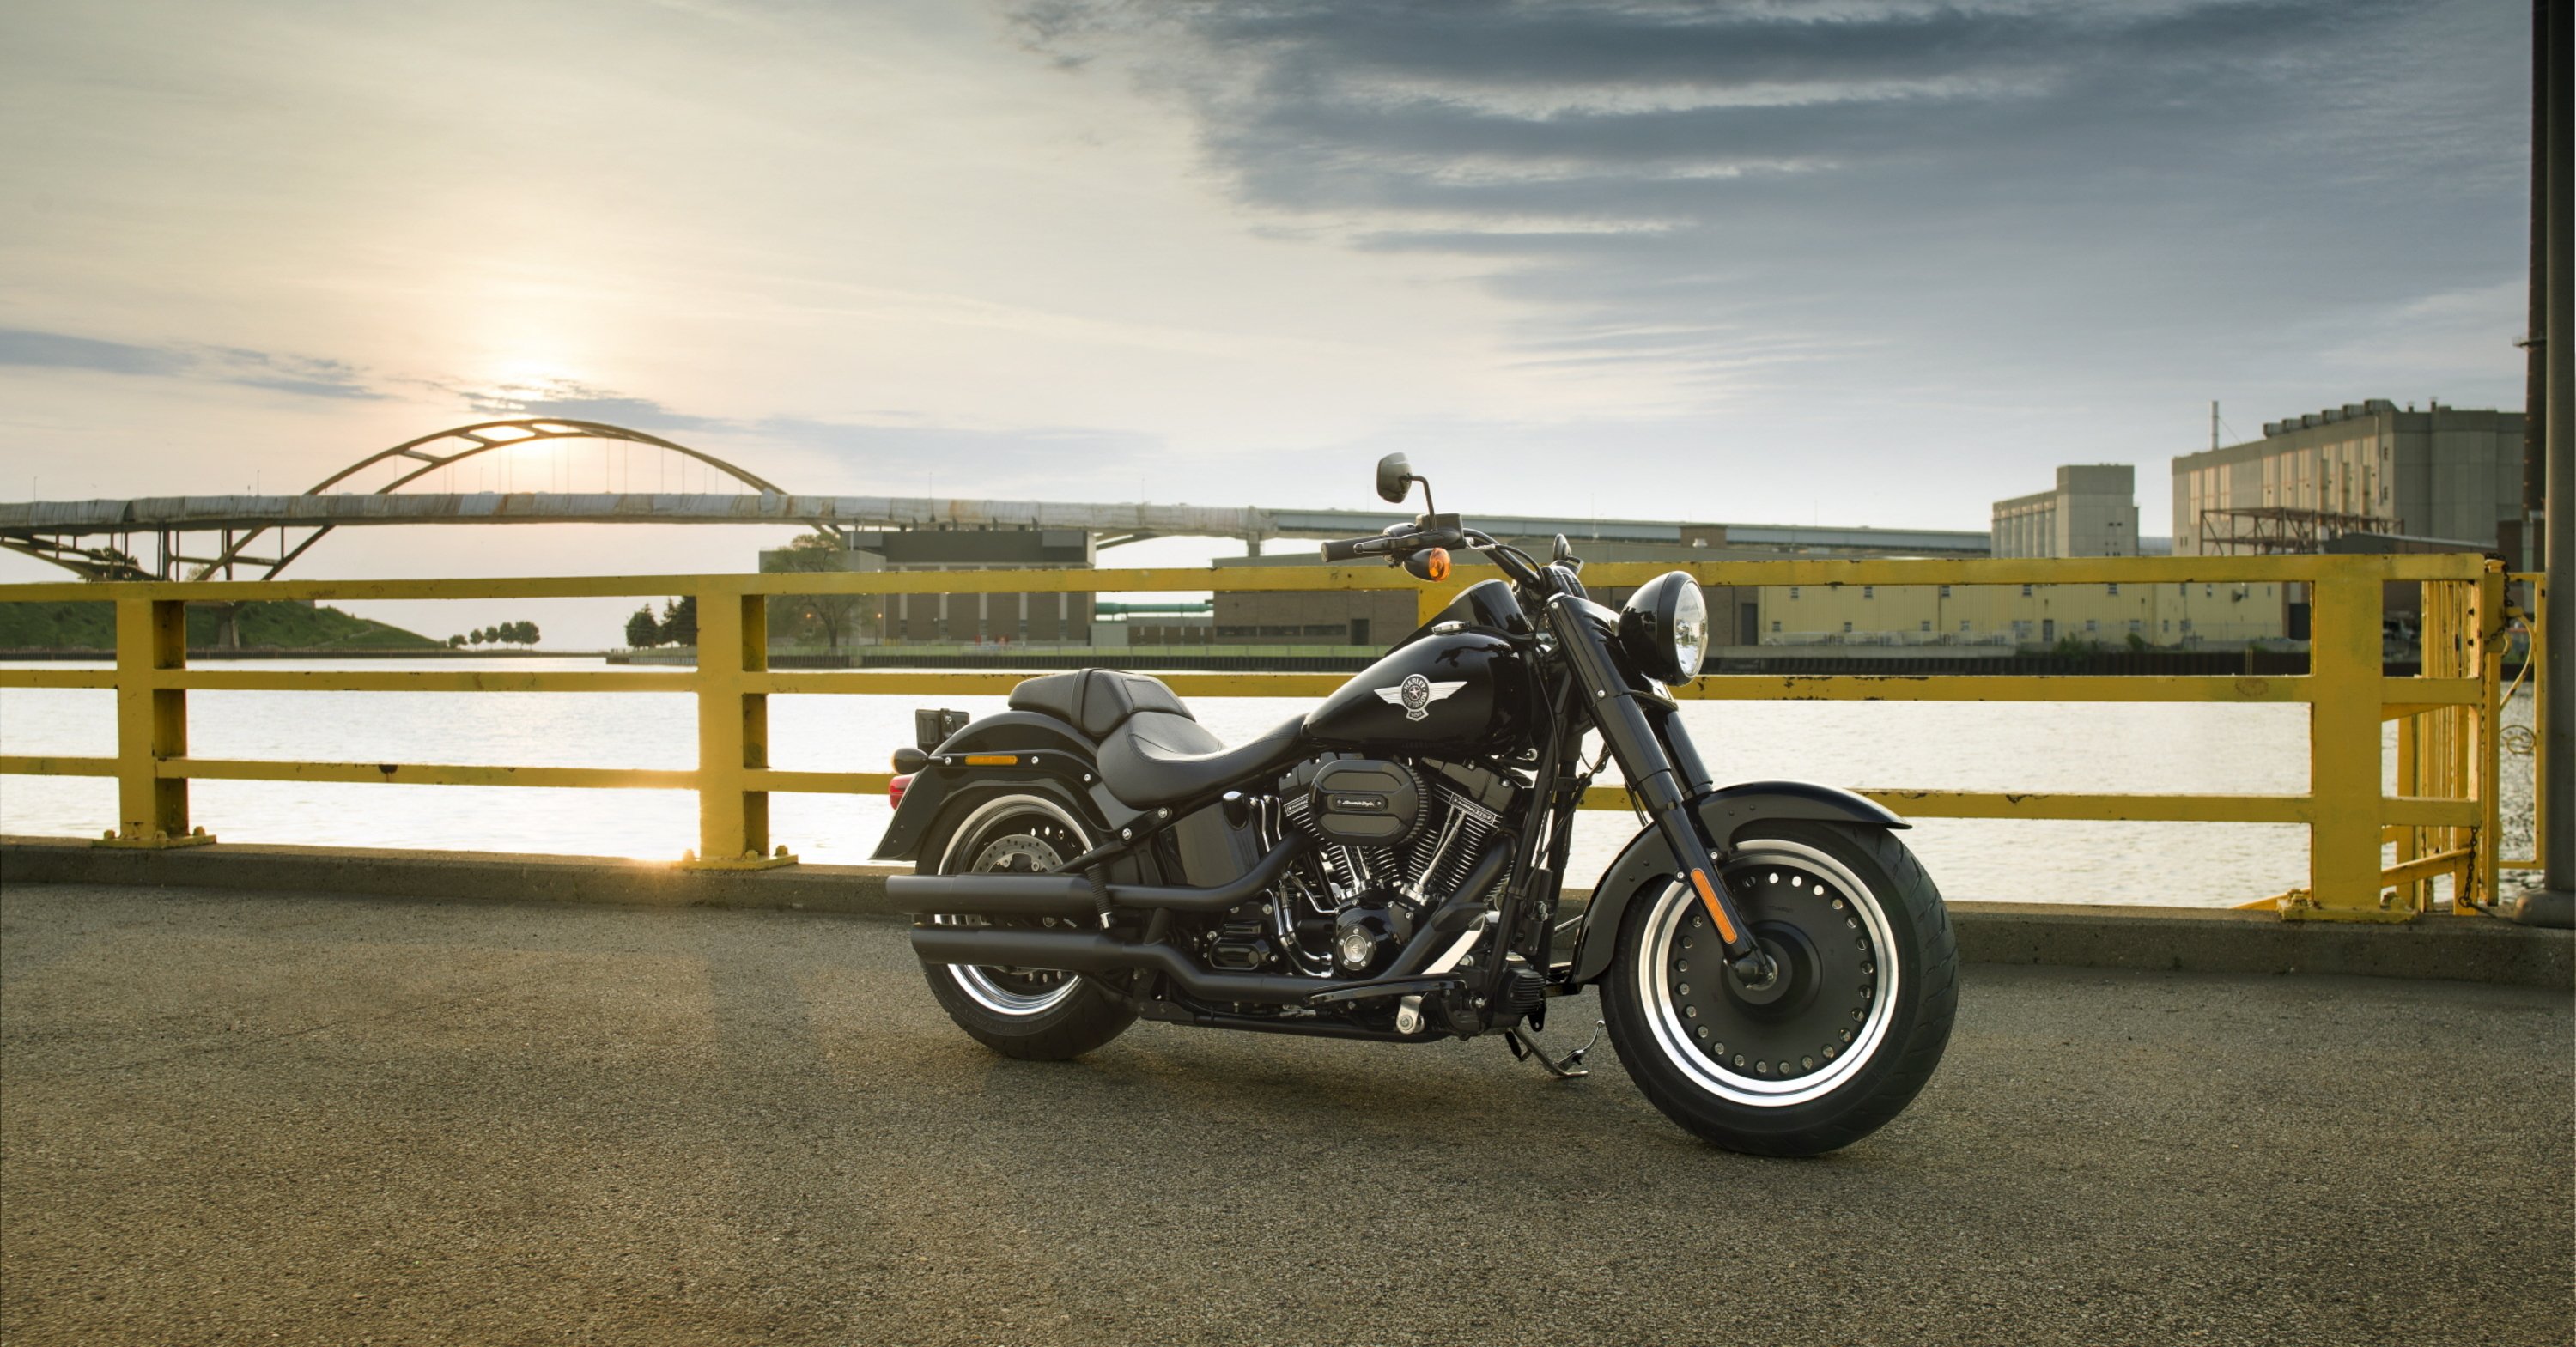 Harley-Davidson: ecco la gamma 2016